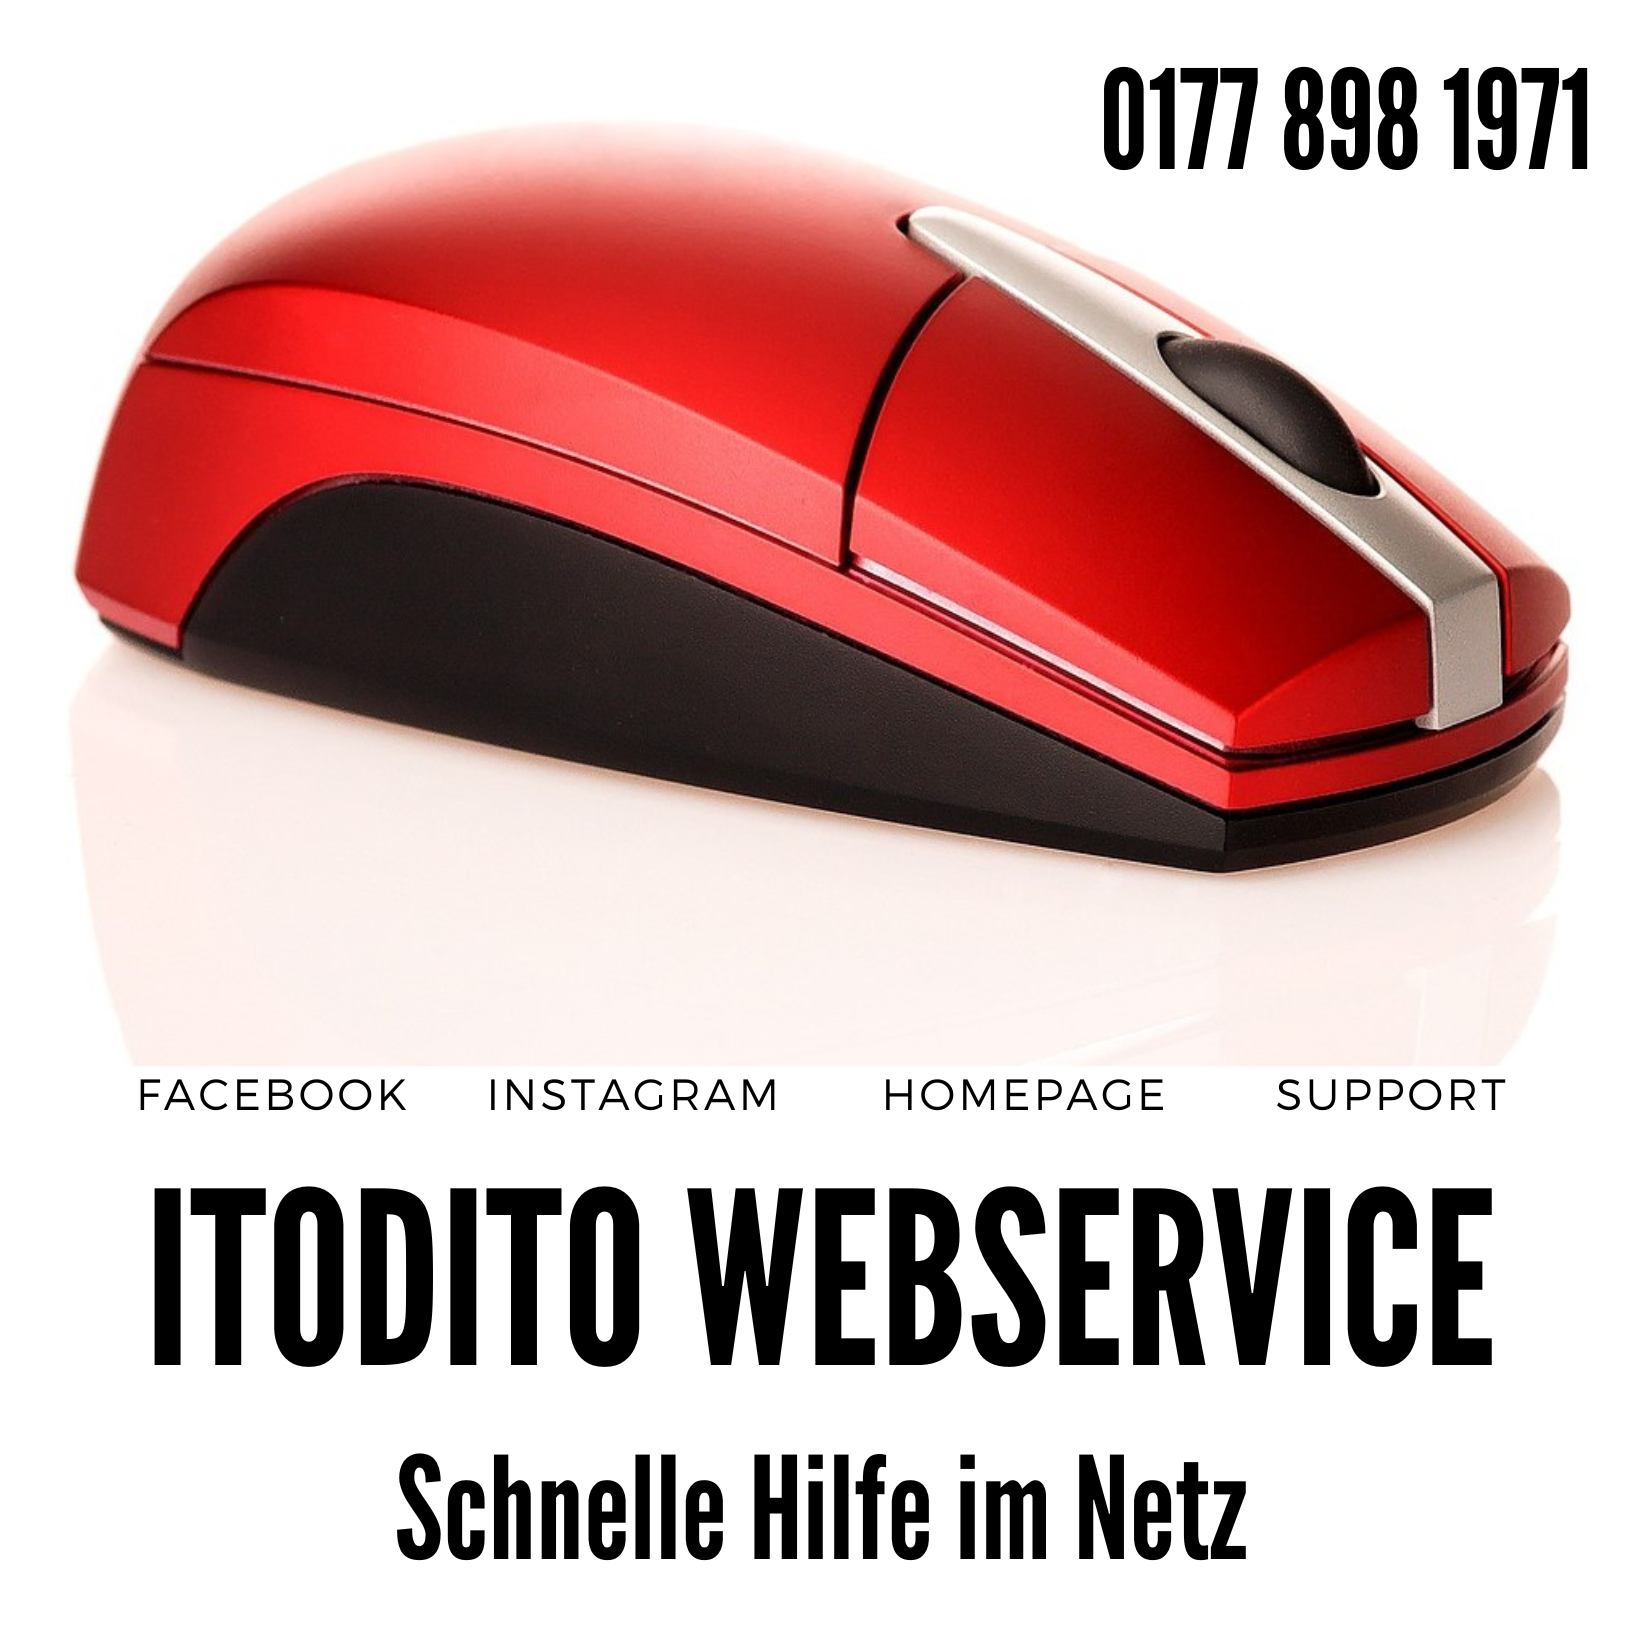 Willkommen beim ItoDito Webservice - schnelle Hilfe im Netz aus Münster